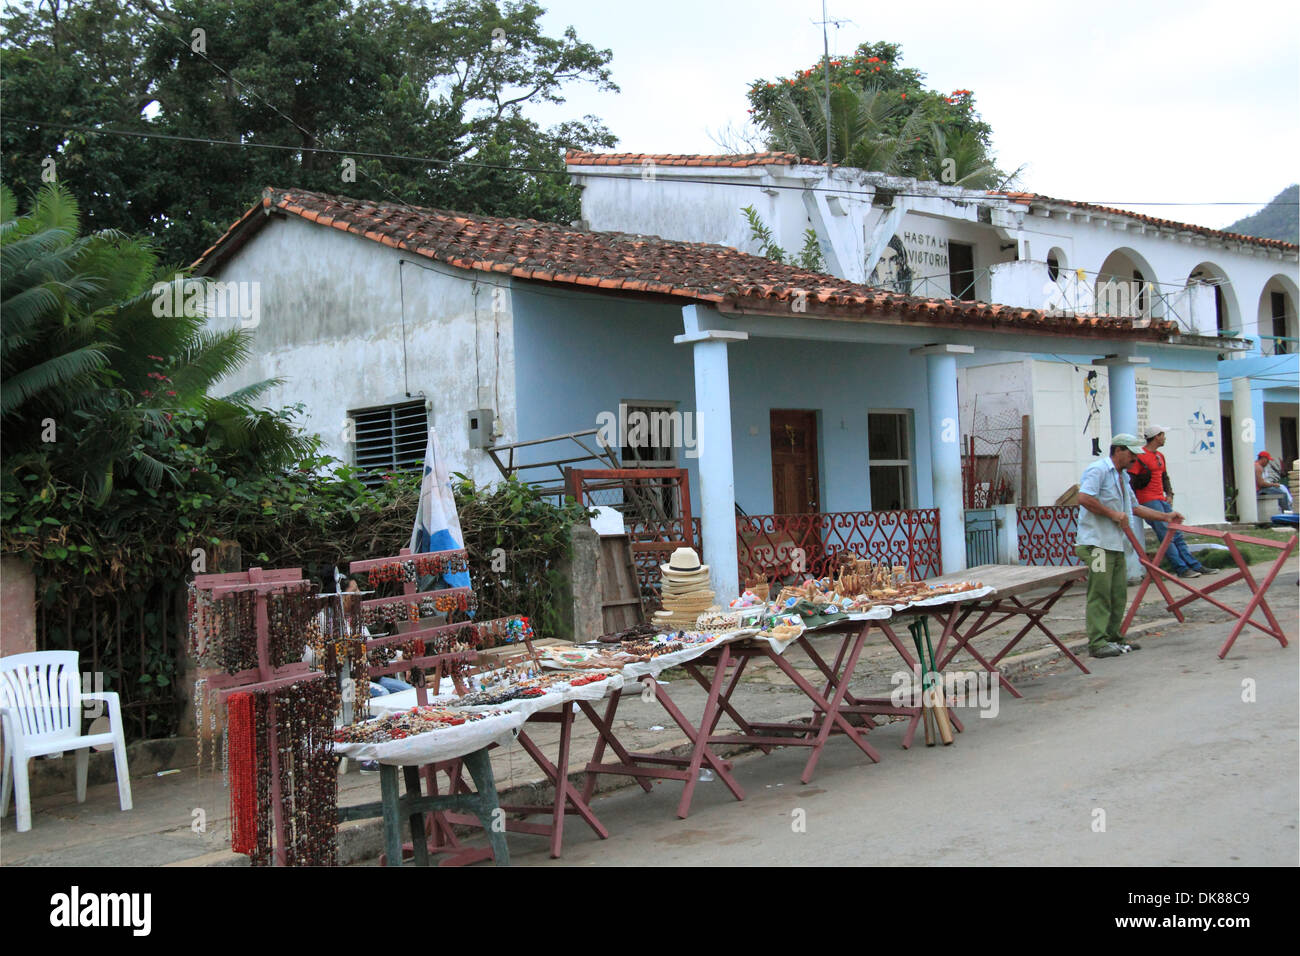 Souvenirstände in der Nähe von Casa de la Cultura, Parque Martí, Viñales, Pinar del Rio, Kuba, Karibik, Mittelamerika Stockfoto